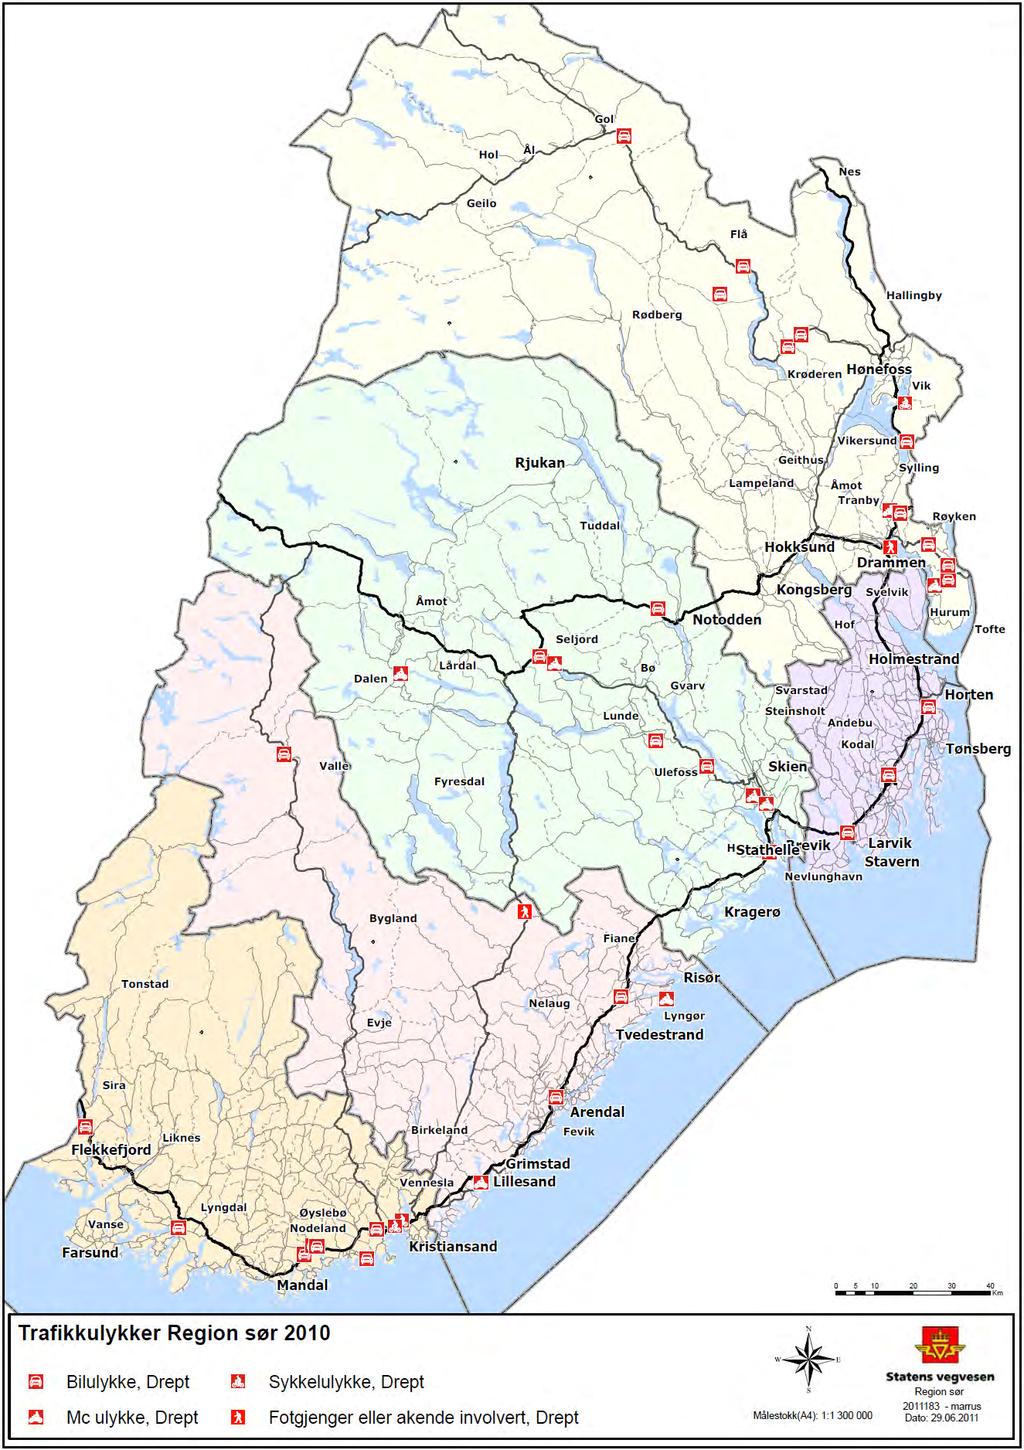 Antall dødsulykker Region sør 2010 kartfestet